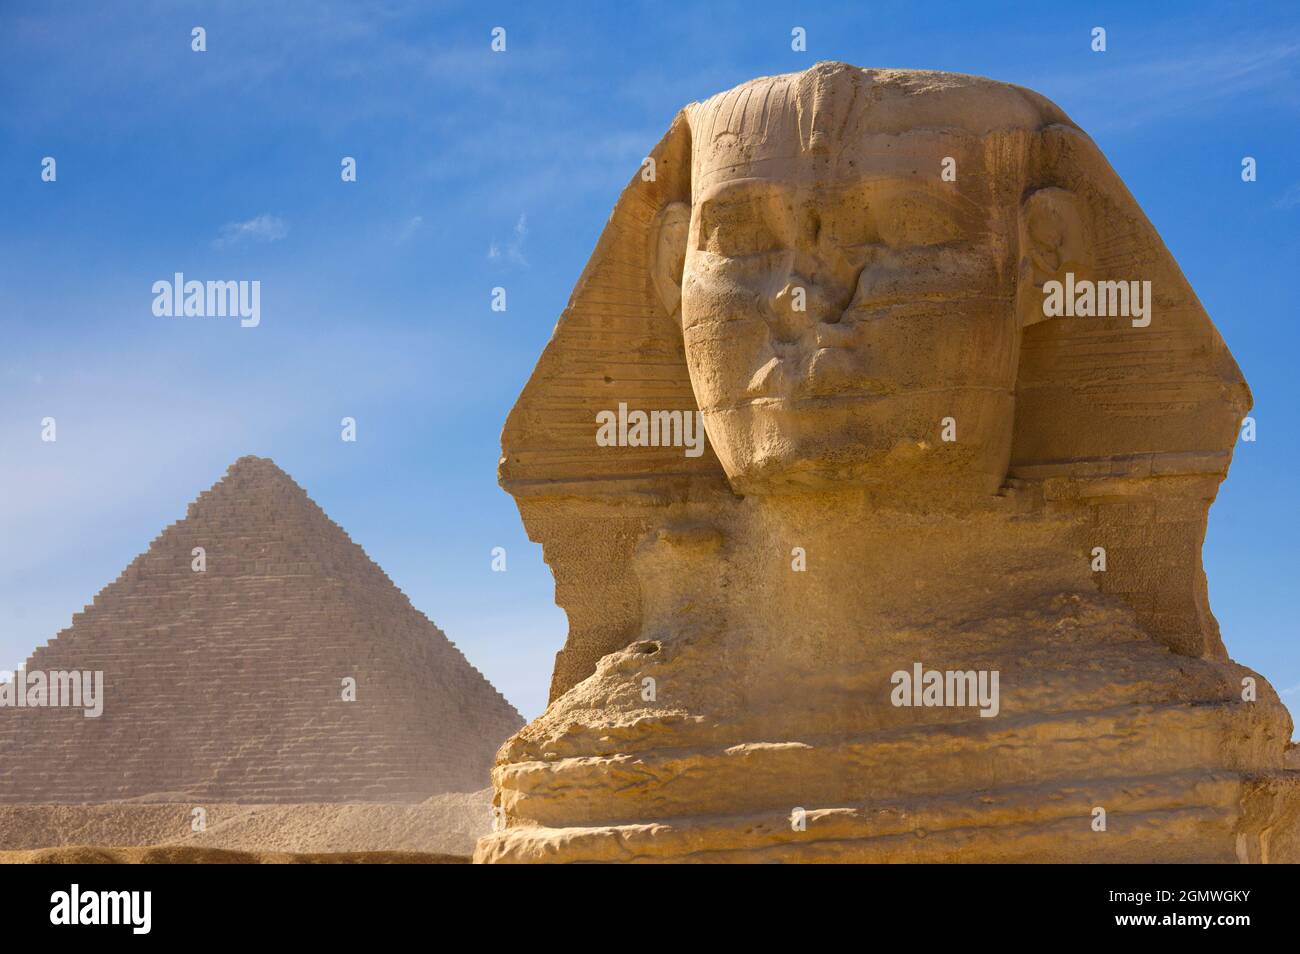 Cairo, Egitto - 7 dicembre 2010; Una sfinge è una creatura mitica con la testa di un essere umano e il corpo di un leone. La rappresentazione più famosa di un tale c Foto Stock